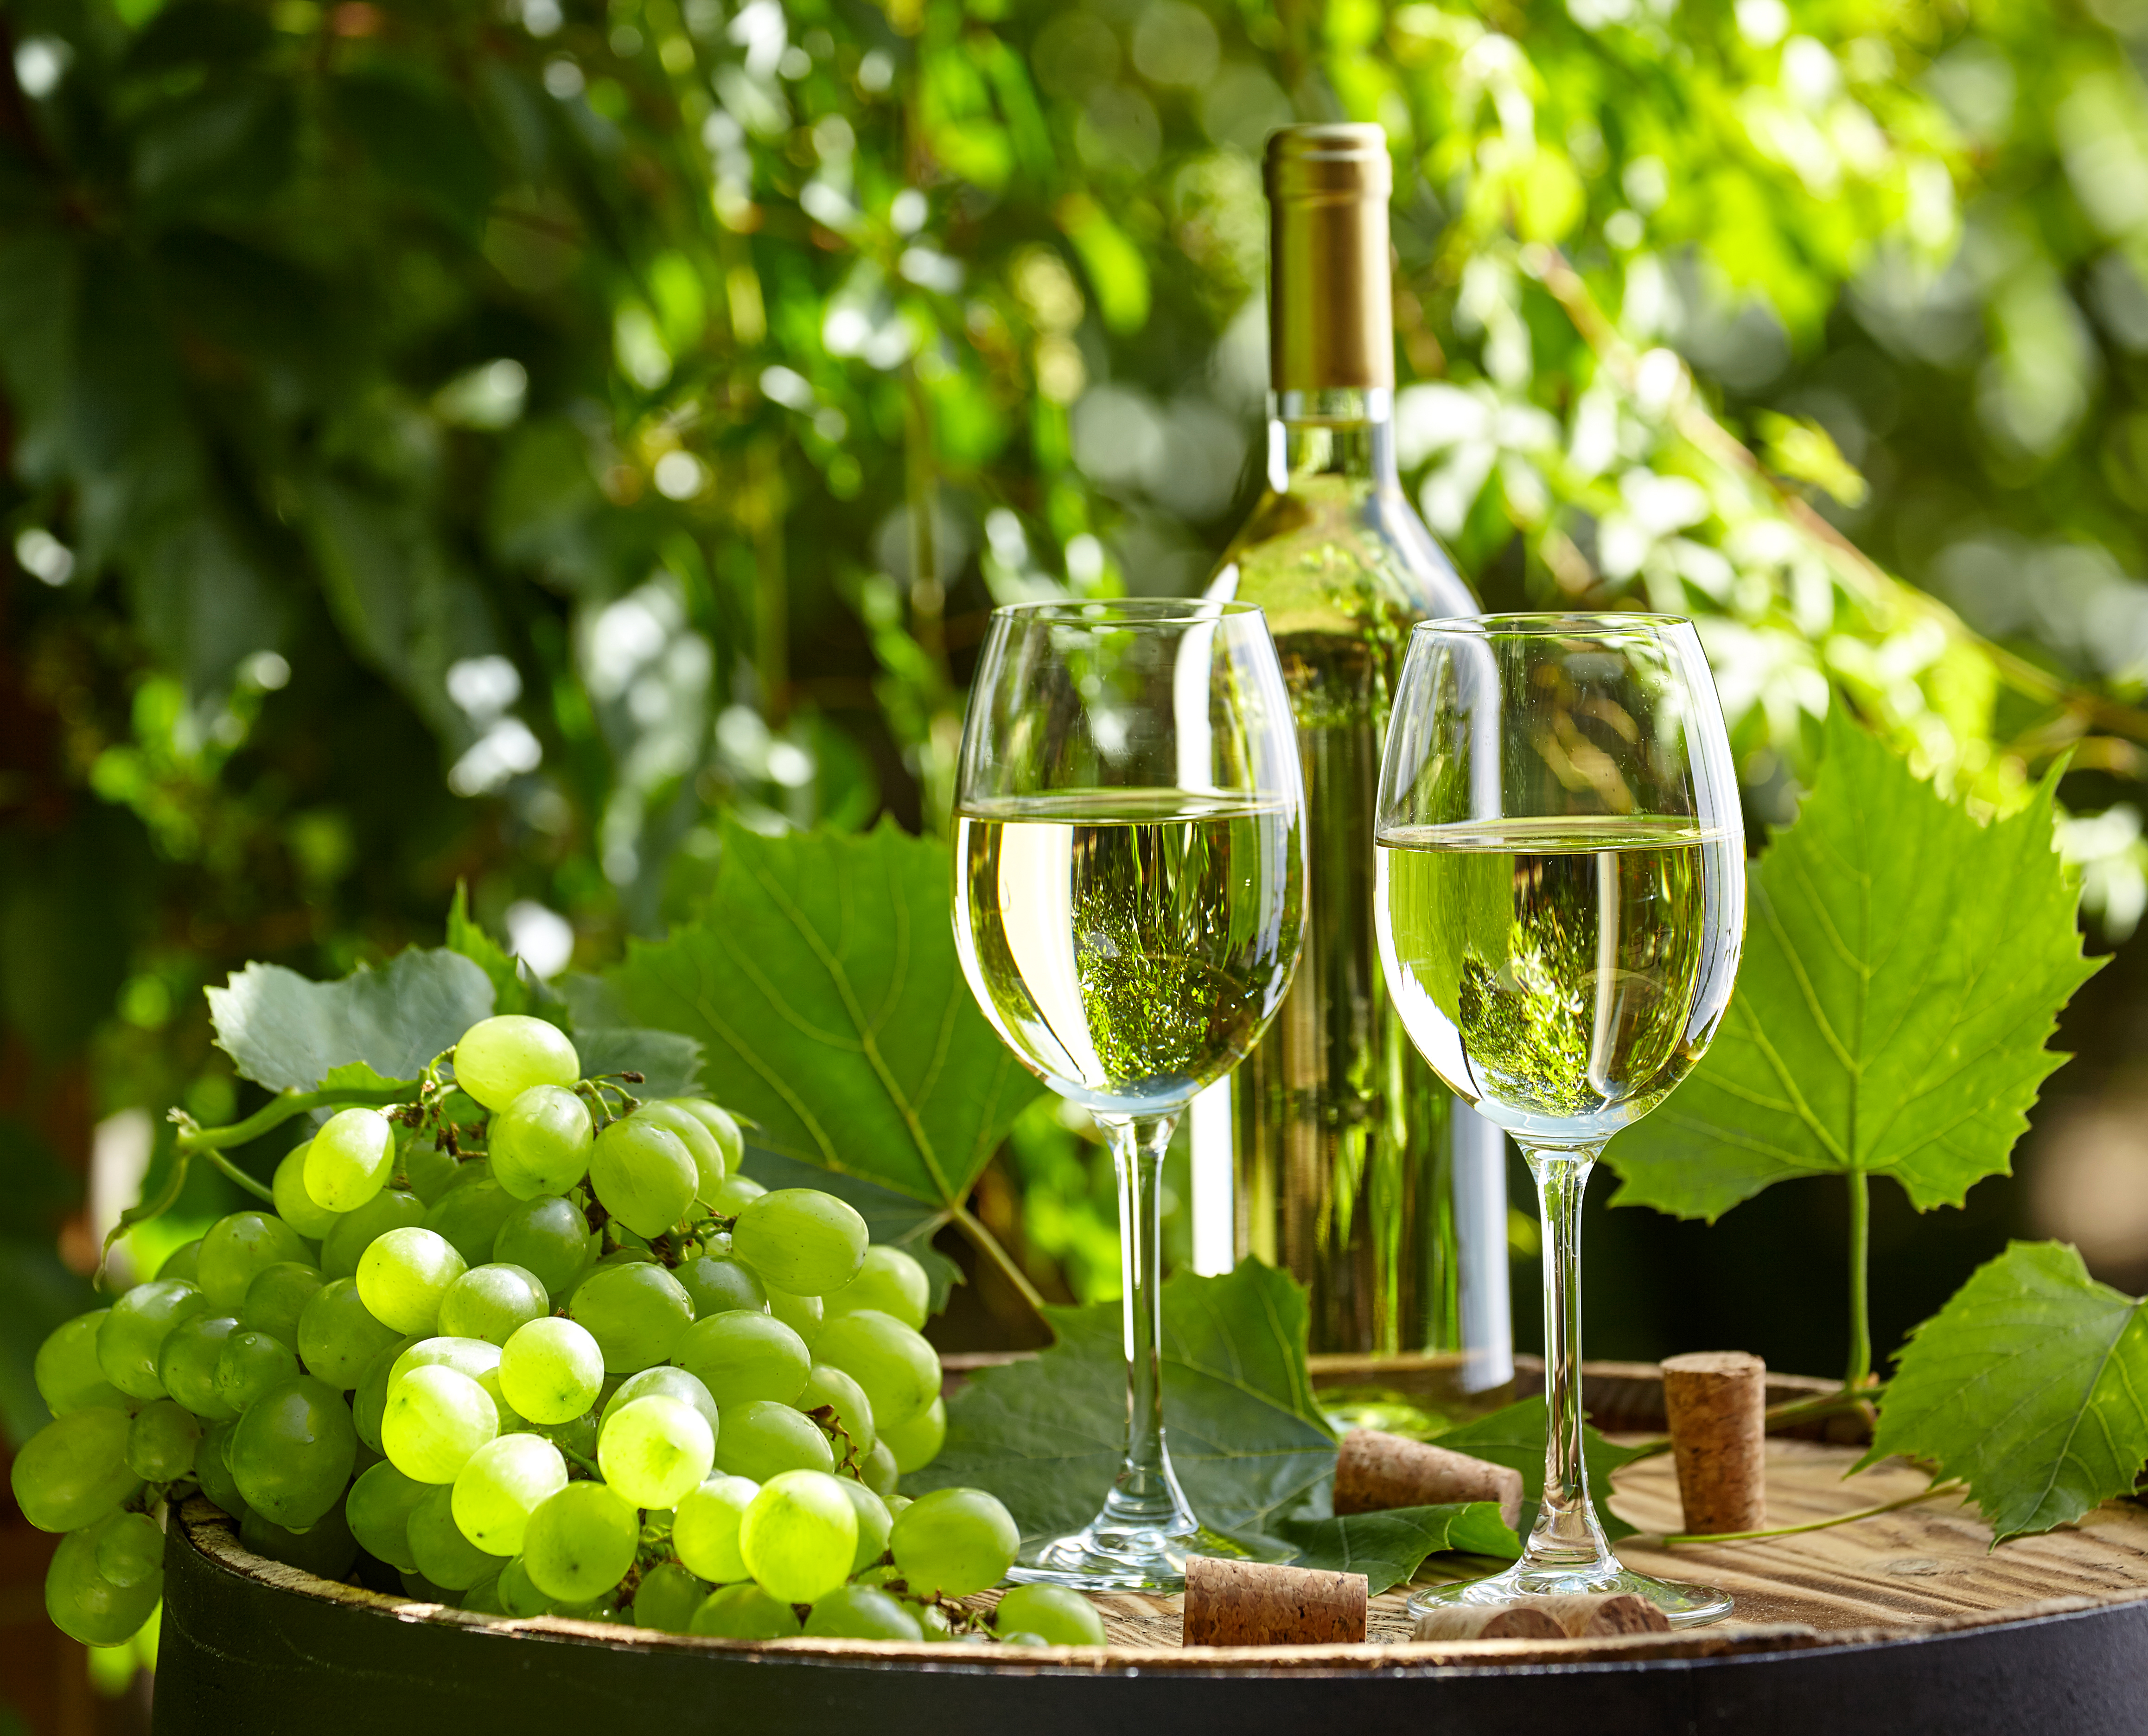 Сорт белого вина 7. Торронтес виноград. Совиньон Блан виноградник. Белое вино. Бокал с вином.